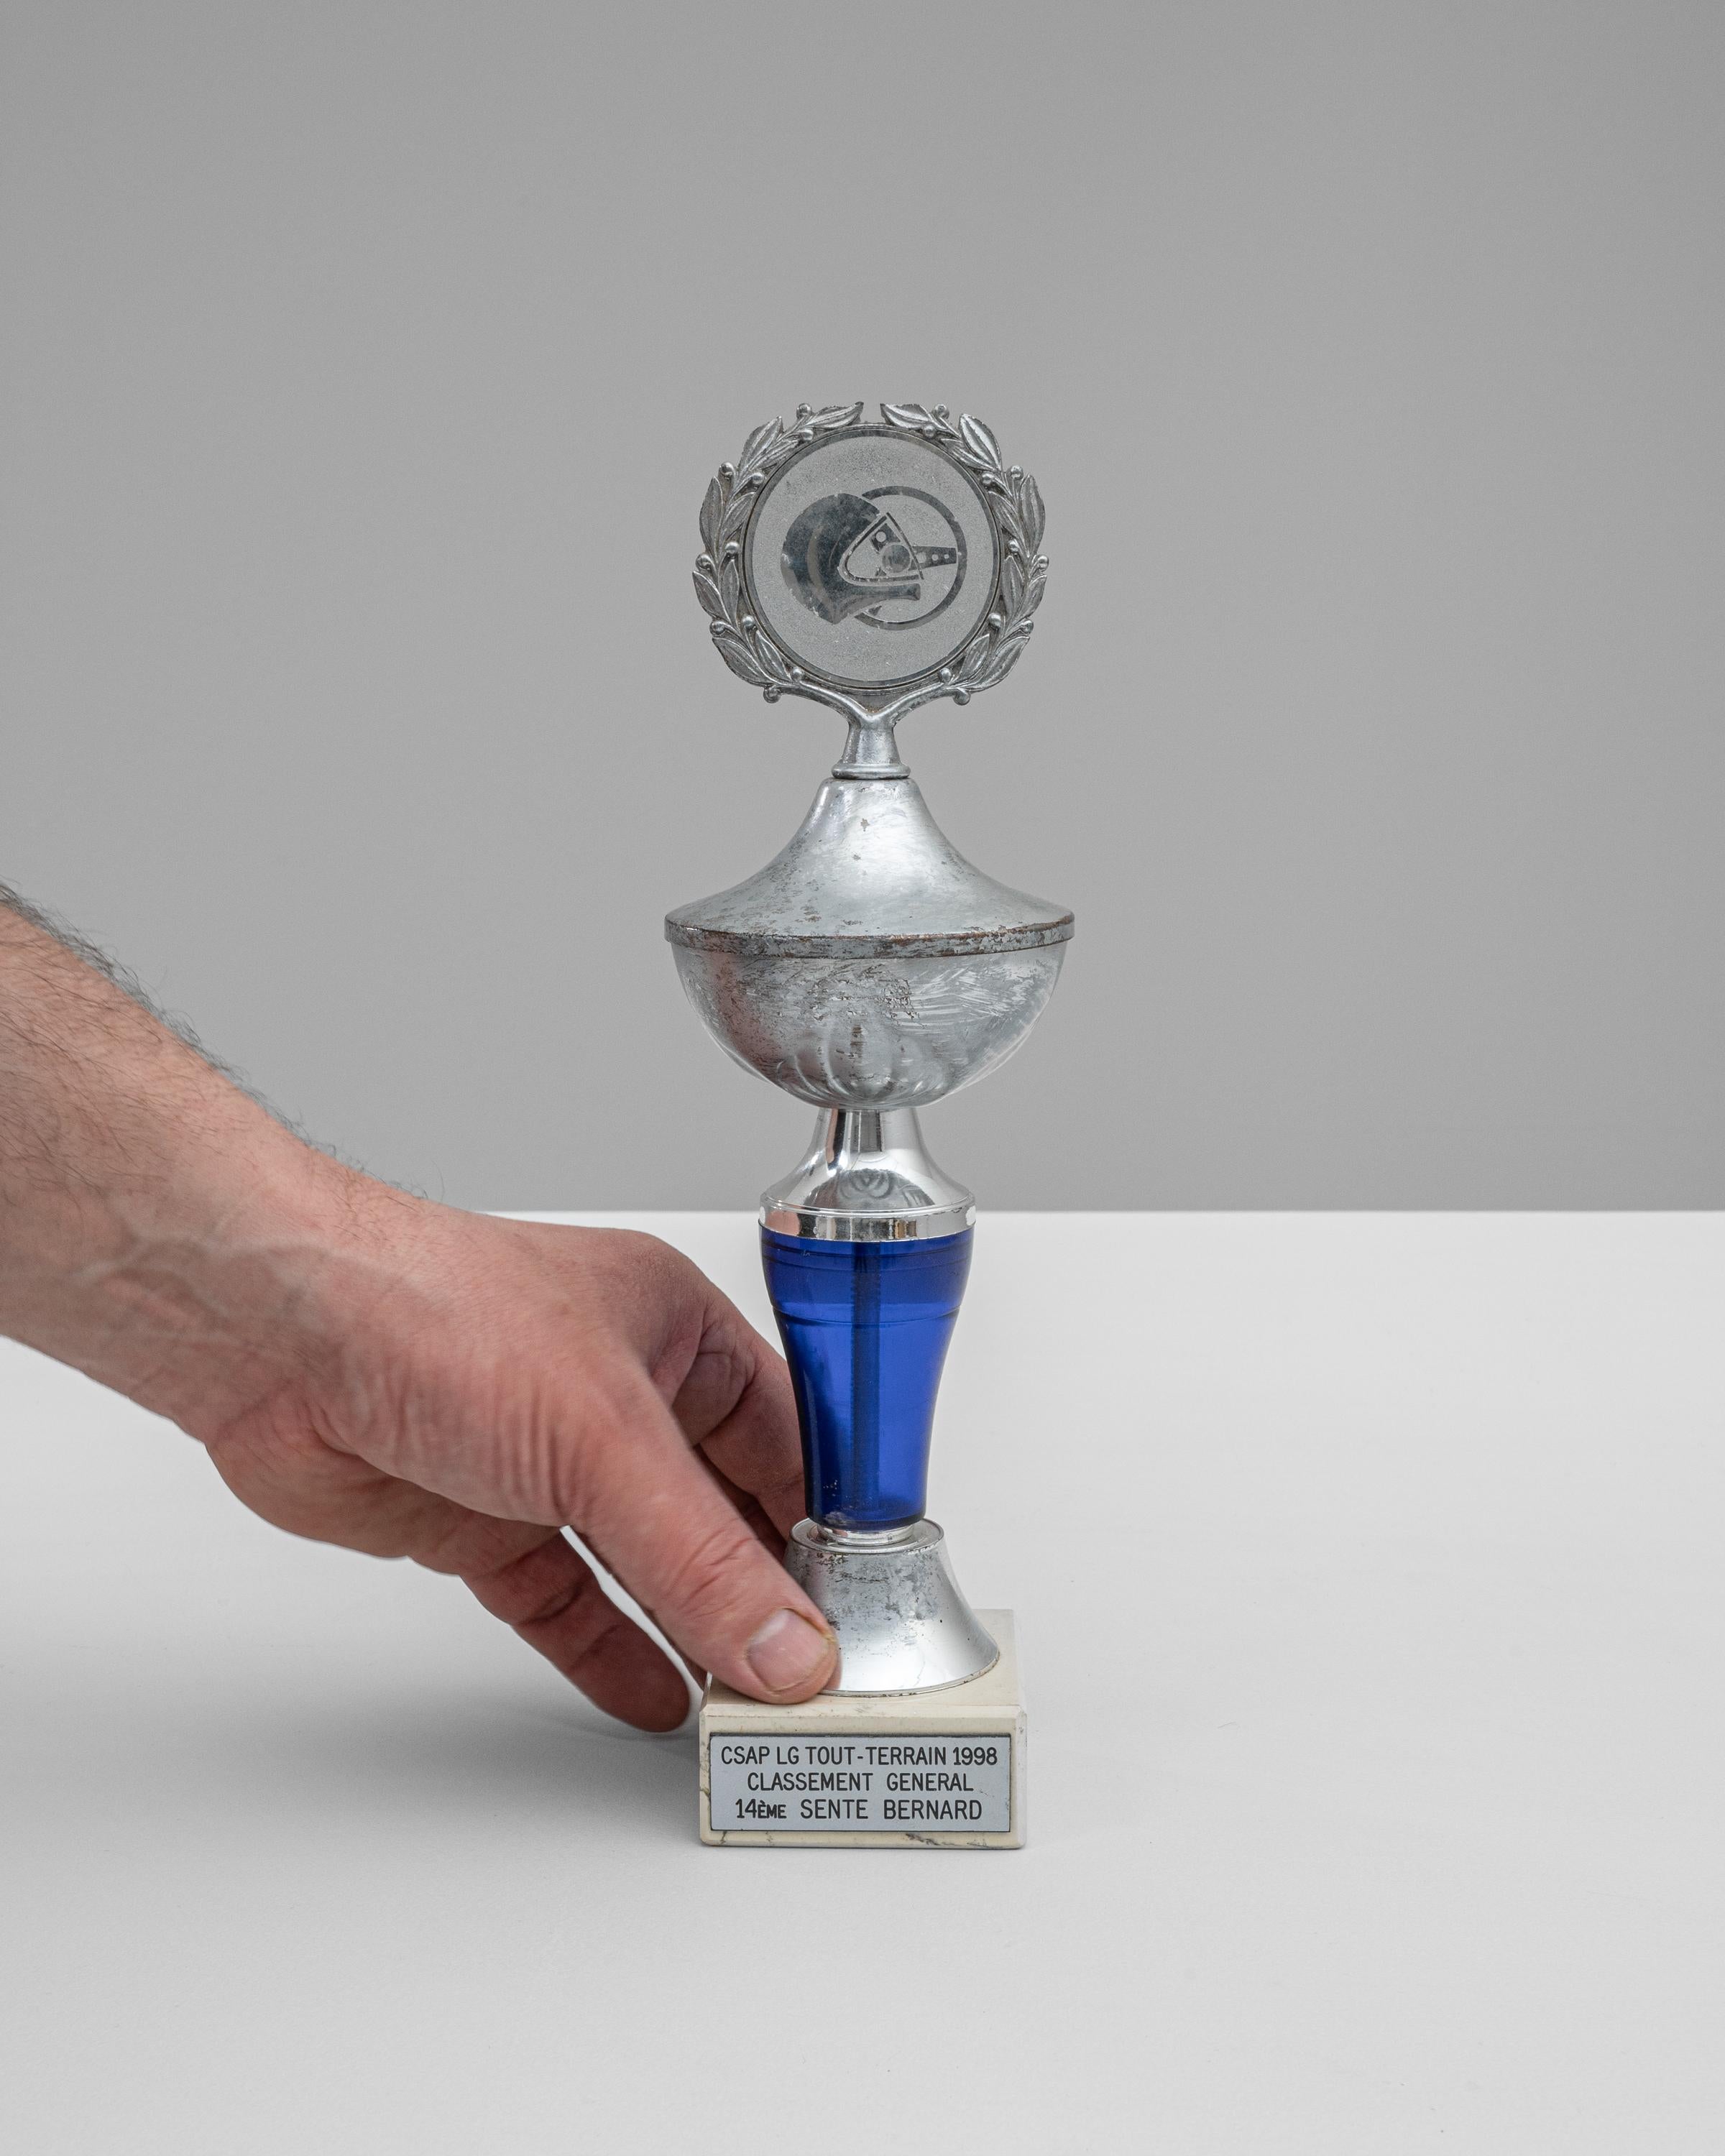 Dieser belgische Metall- und Marmorpokal aus den 1990er Jahren vom CSAP LG Tout-Terrain 1998 ist eine beeindruckende Auszeichnung, die die Kraft und Entschlossenheit des Geländesports repräsentiert. Das Design der Trophäe ist sowohl auffällig als